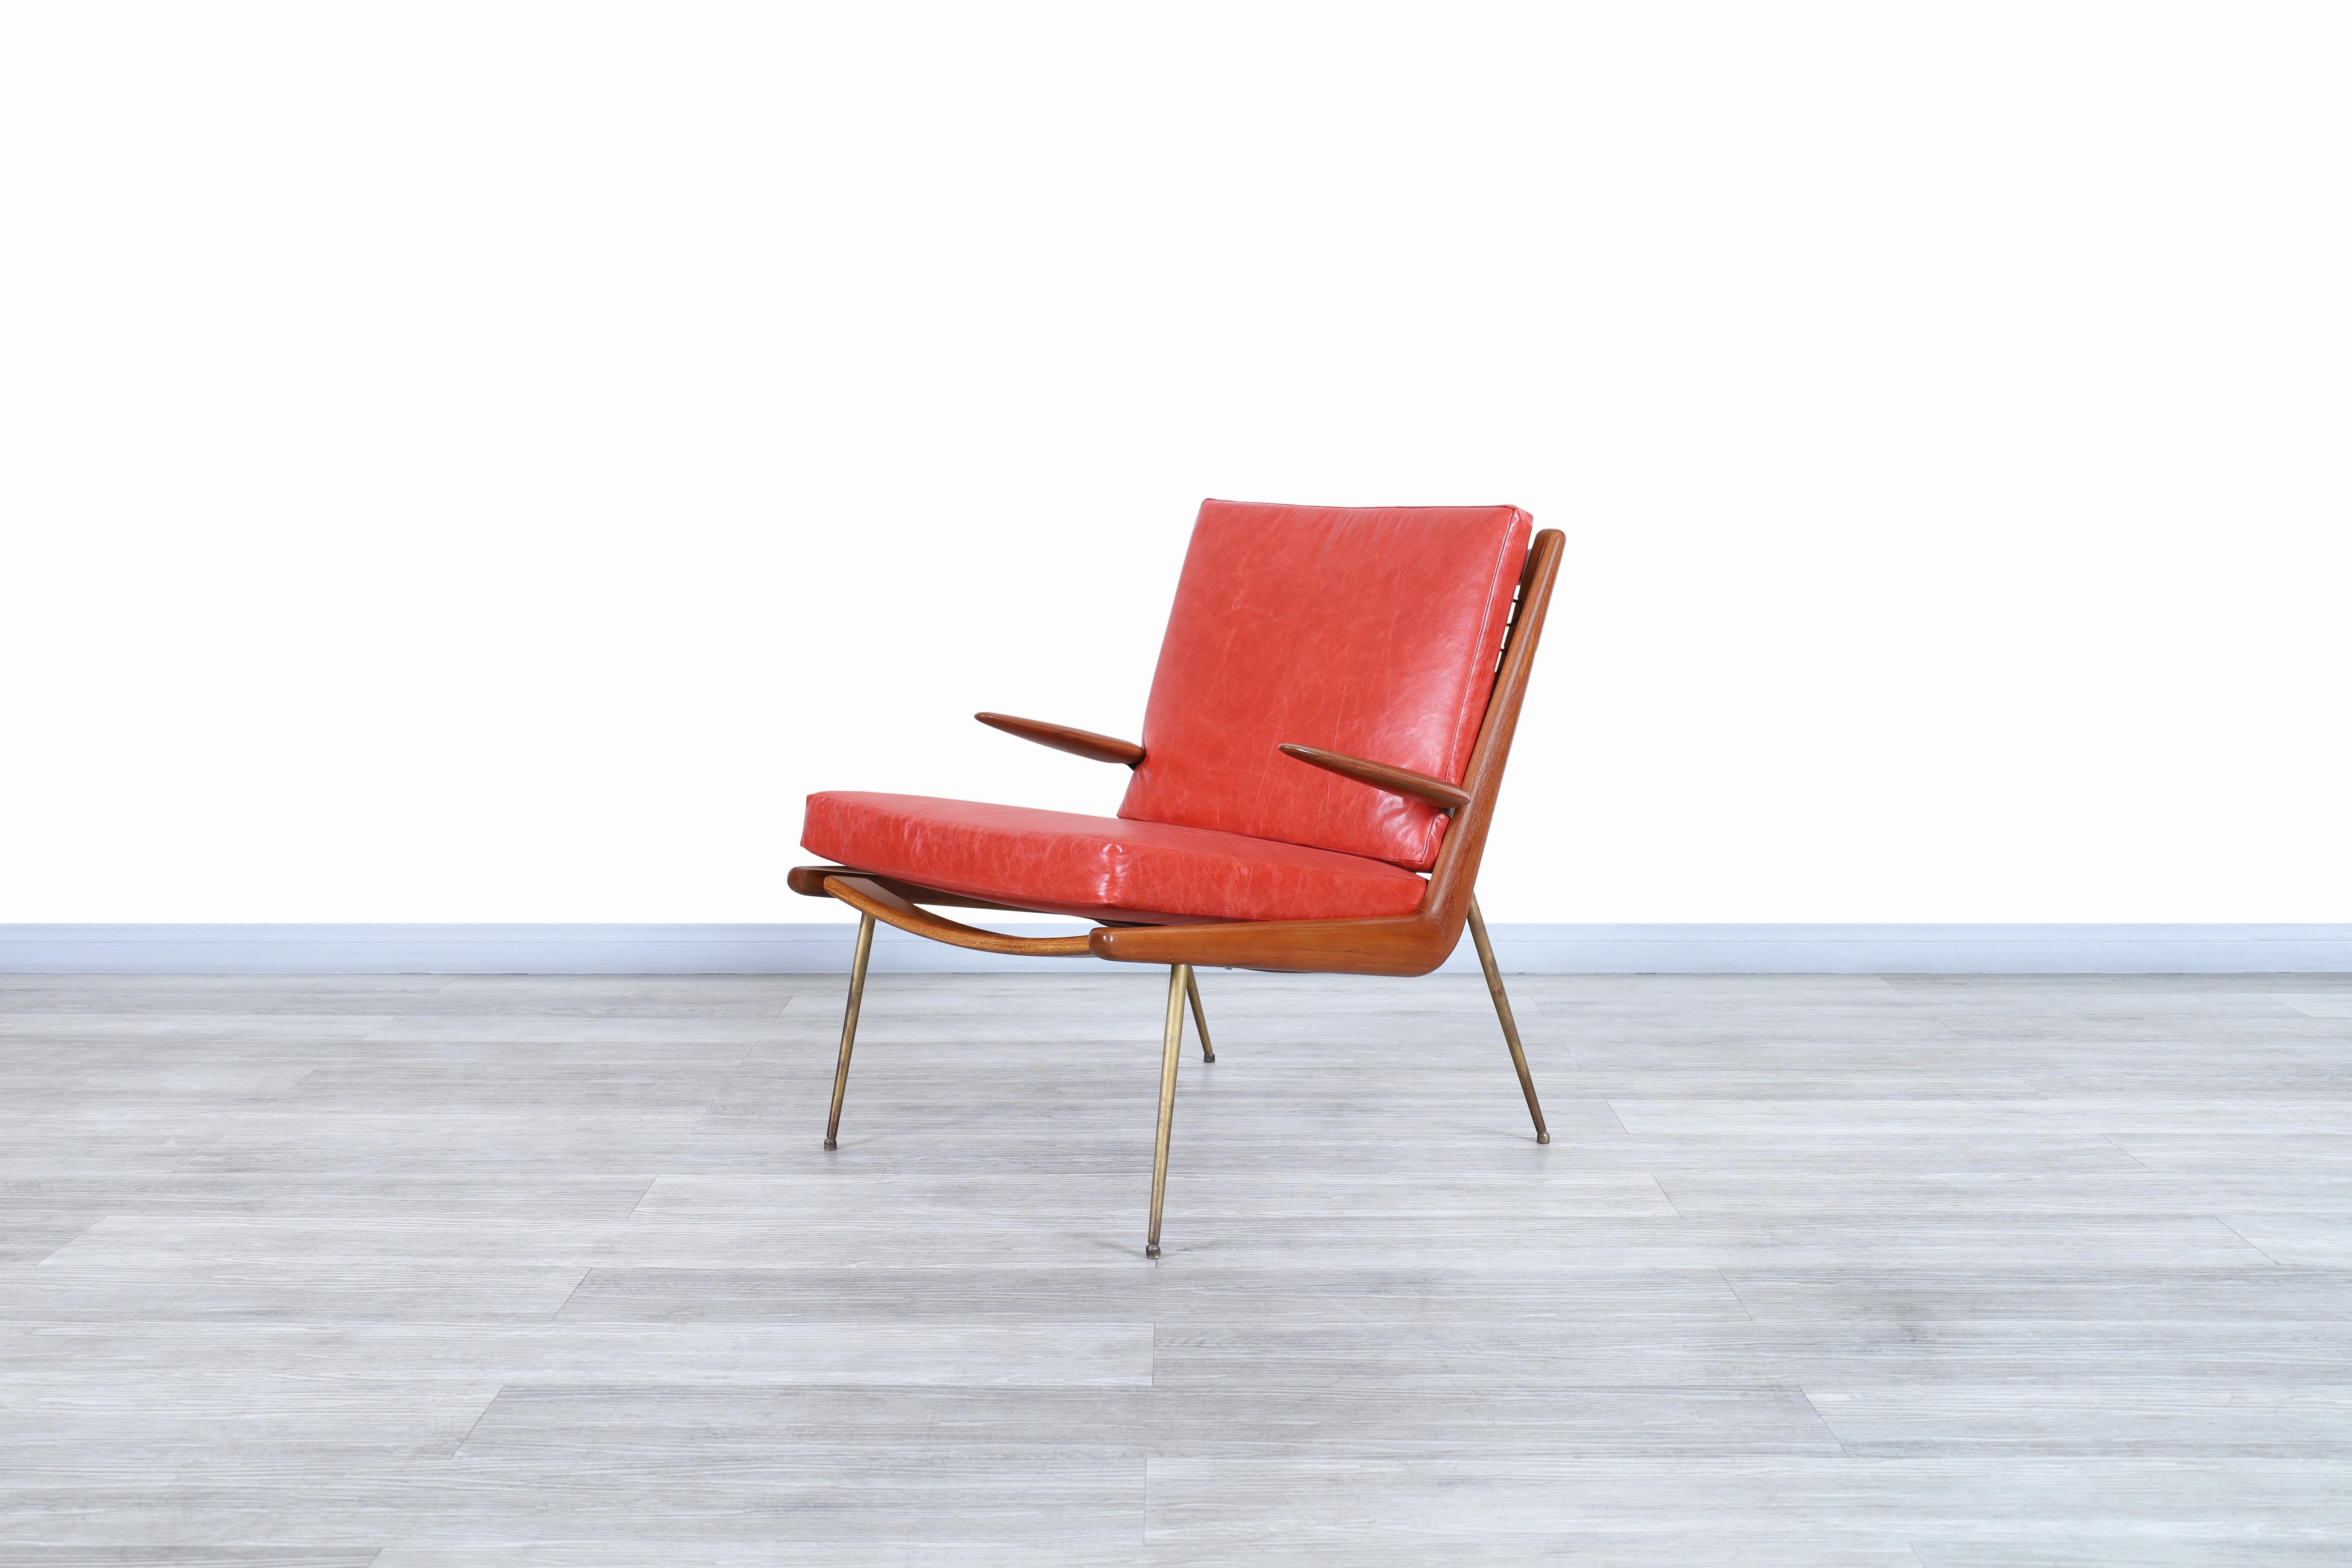 Wunderschöner moderner dänischer Boomerang-Sessel, entworfen von Peter Hvid und Orla Molgaard-Nielsen für France & Daverkosen in Dänemark, ca. 1950er Jahre. Dieser Stuhl wurde als Modell FD-135 identifiziert und zeichnet sich durch die für die für